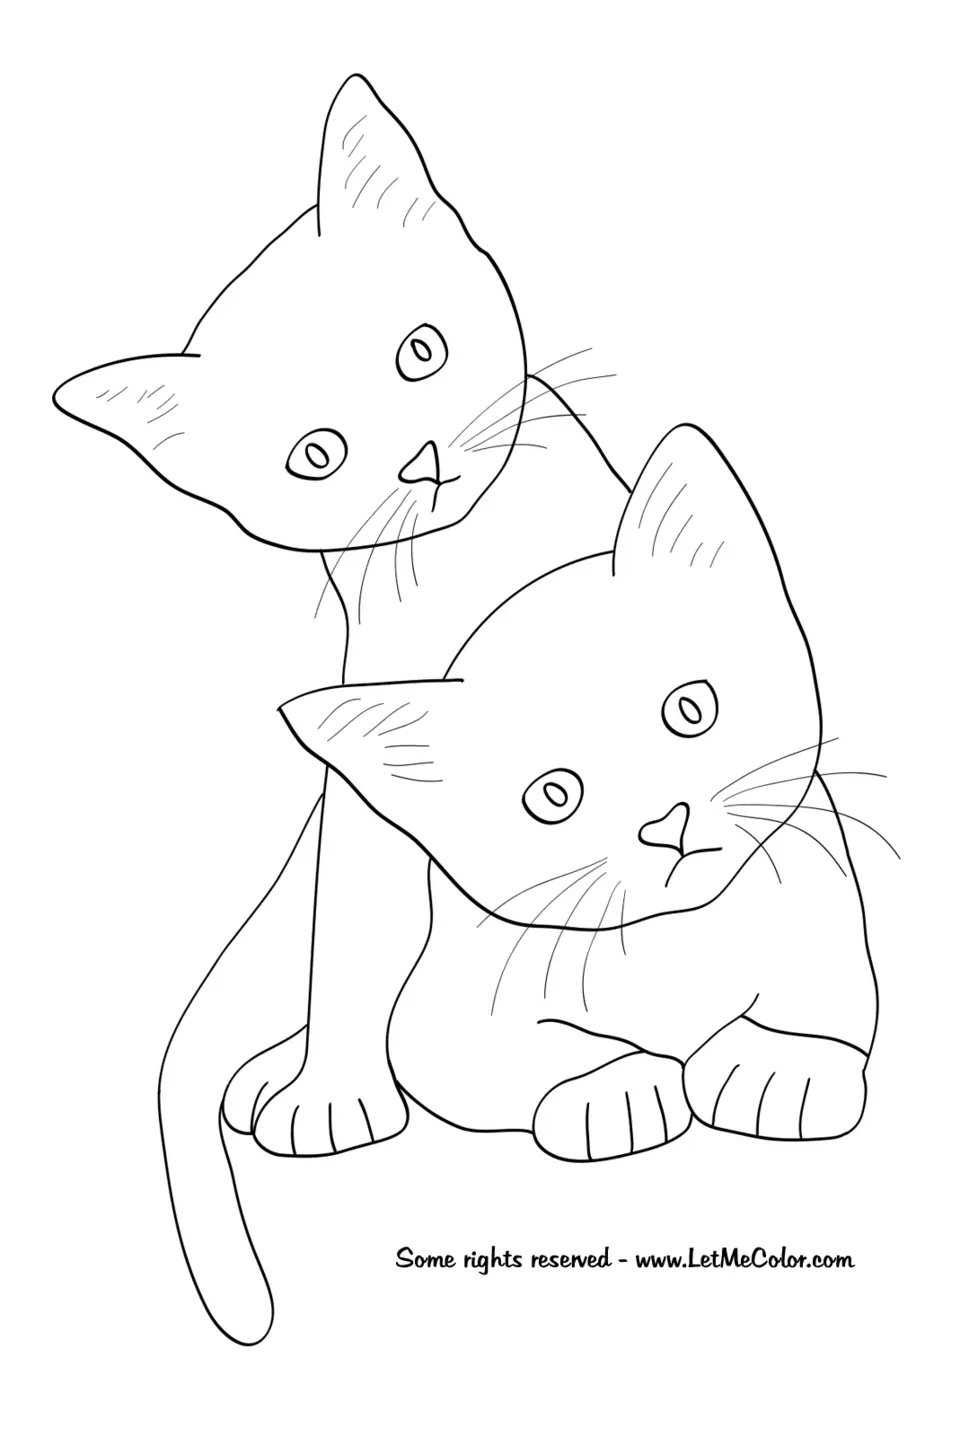 Котёнок рисунок карандашом для детей